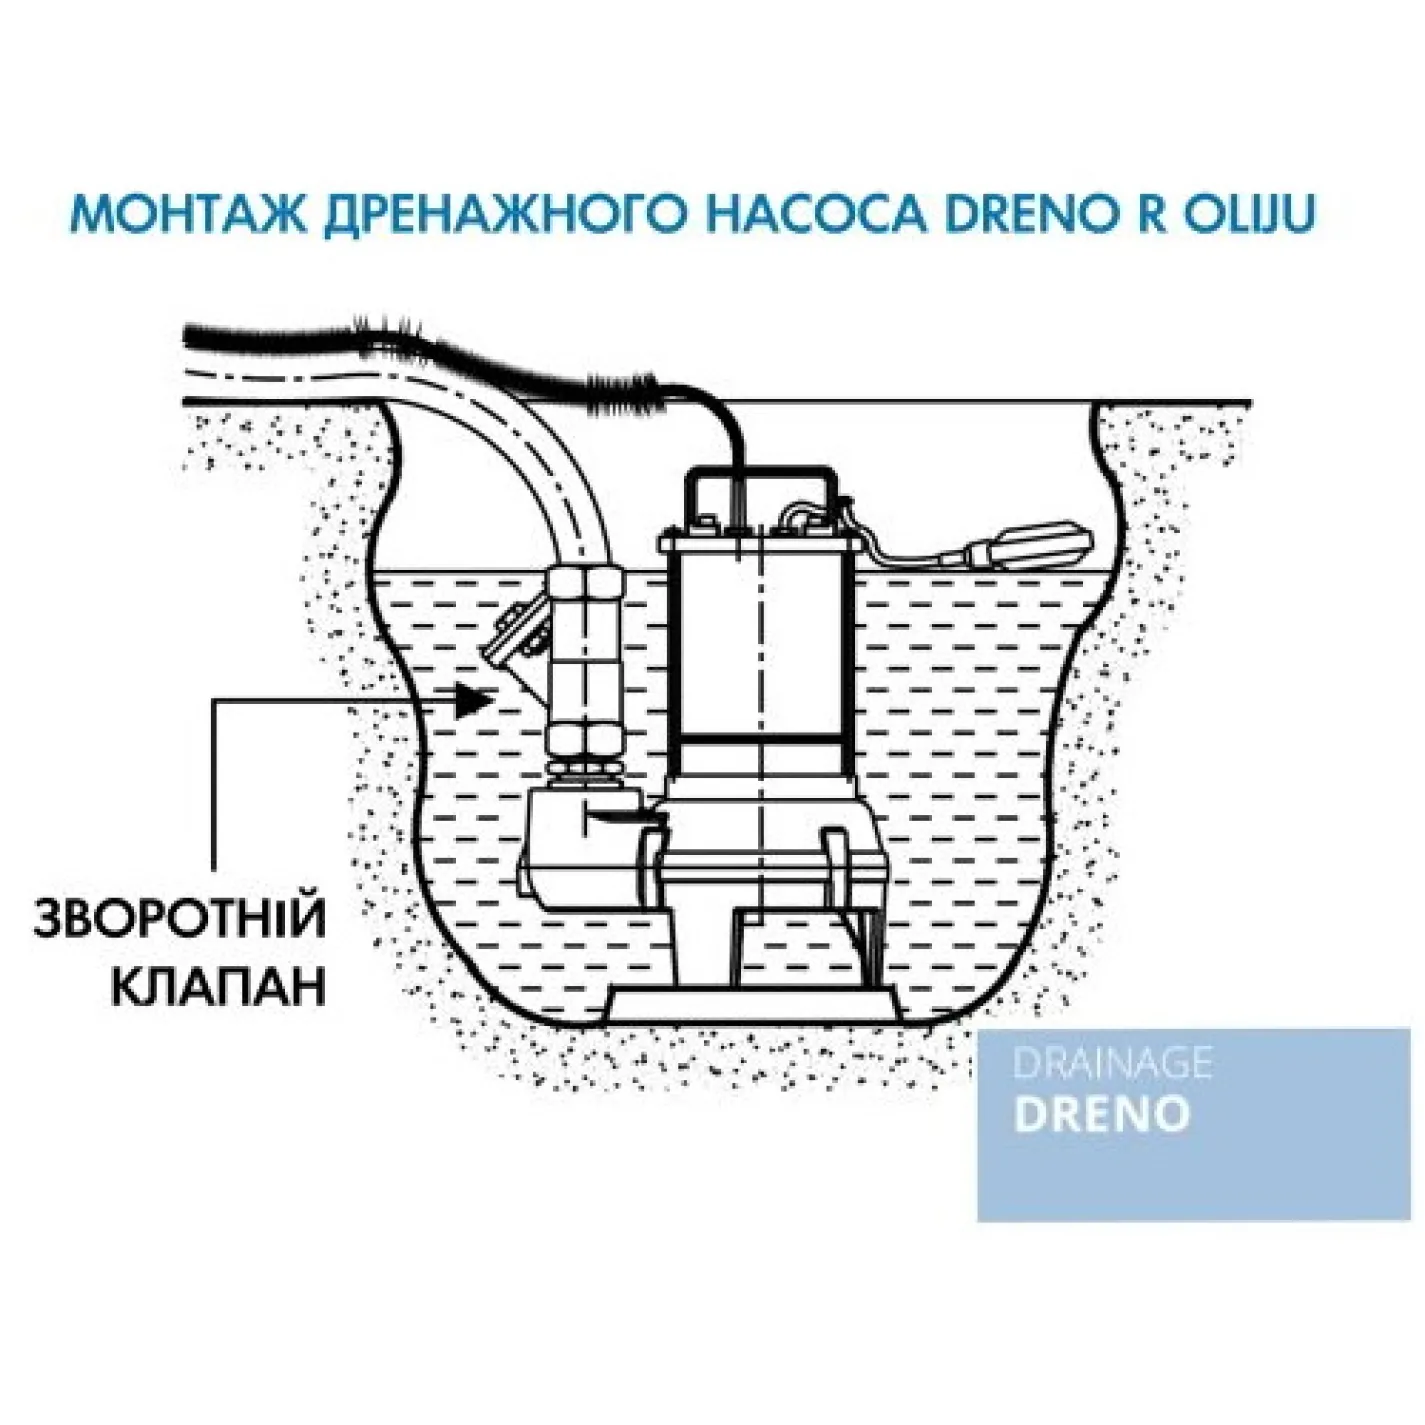 Дренажна установка Oliju Dreno R 30.37.1A - Фото 3